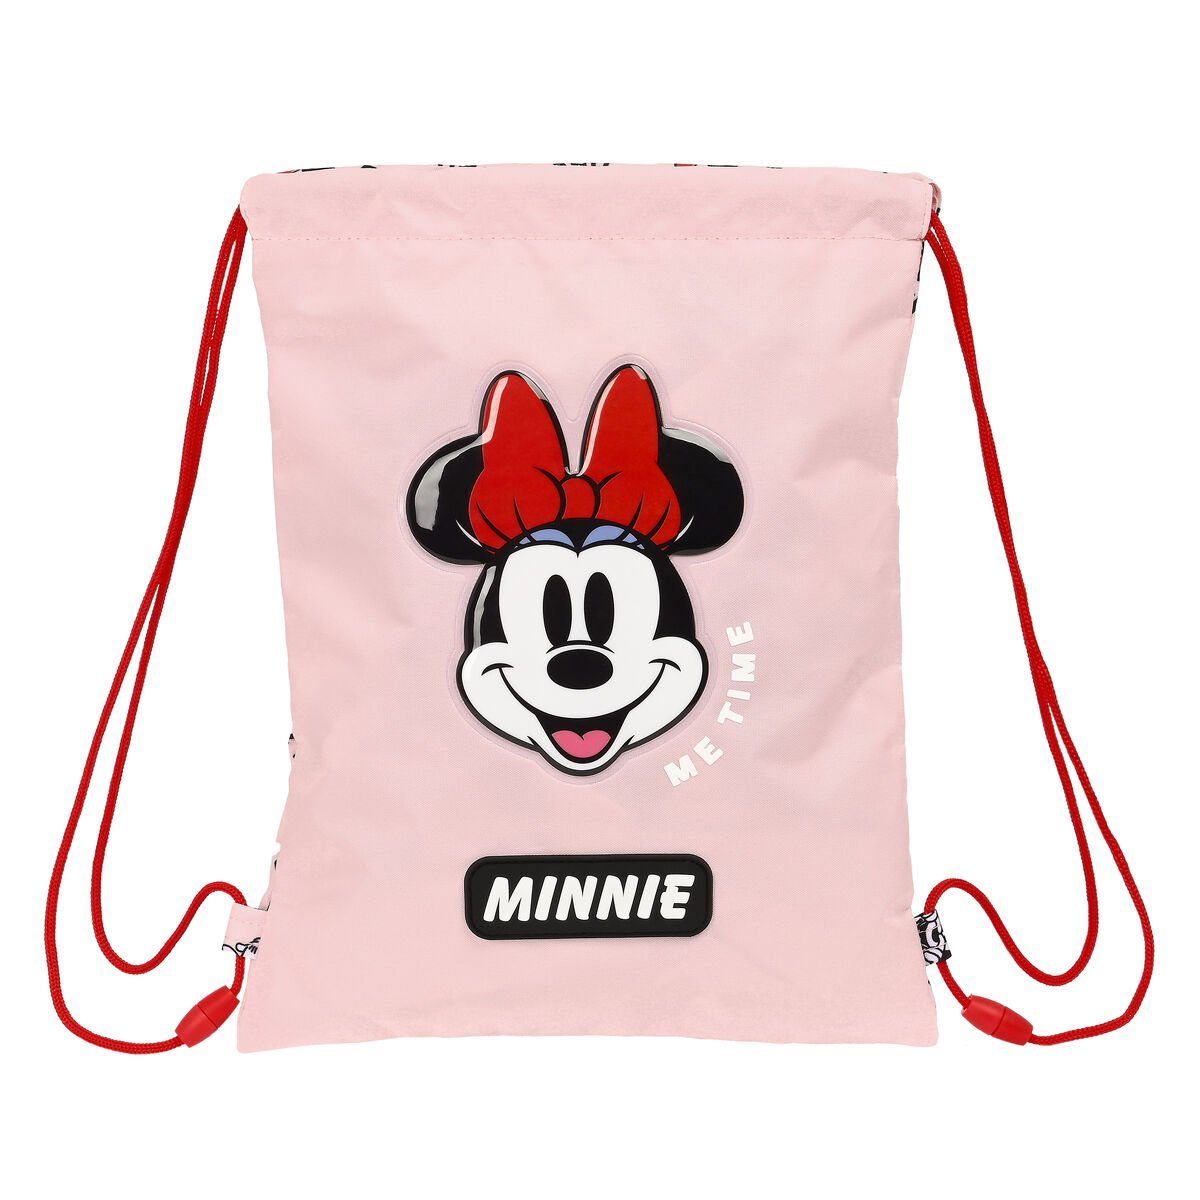 Minnie Rosa Minnie x Rucksack Disney mit Rucksacktasche Me cm x 1 Mouse Bändern time 34 26 Mouse